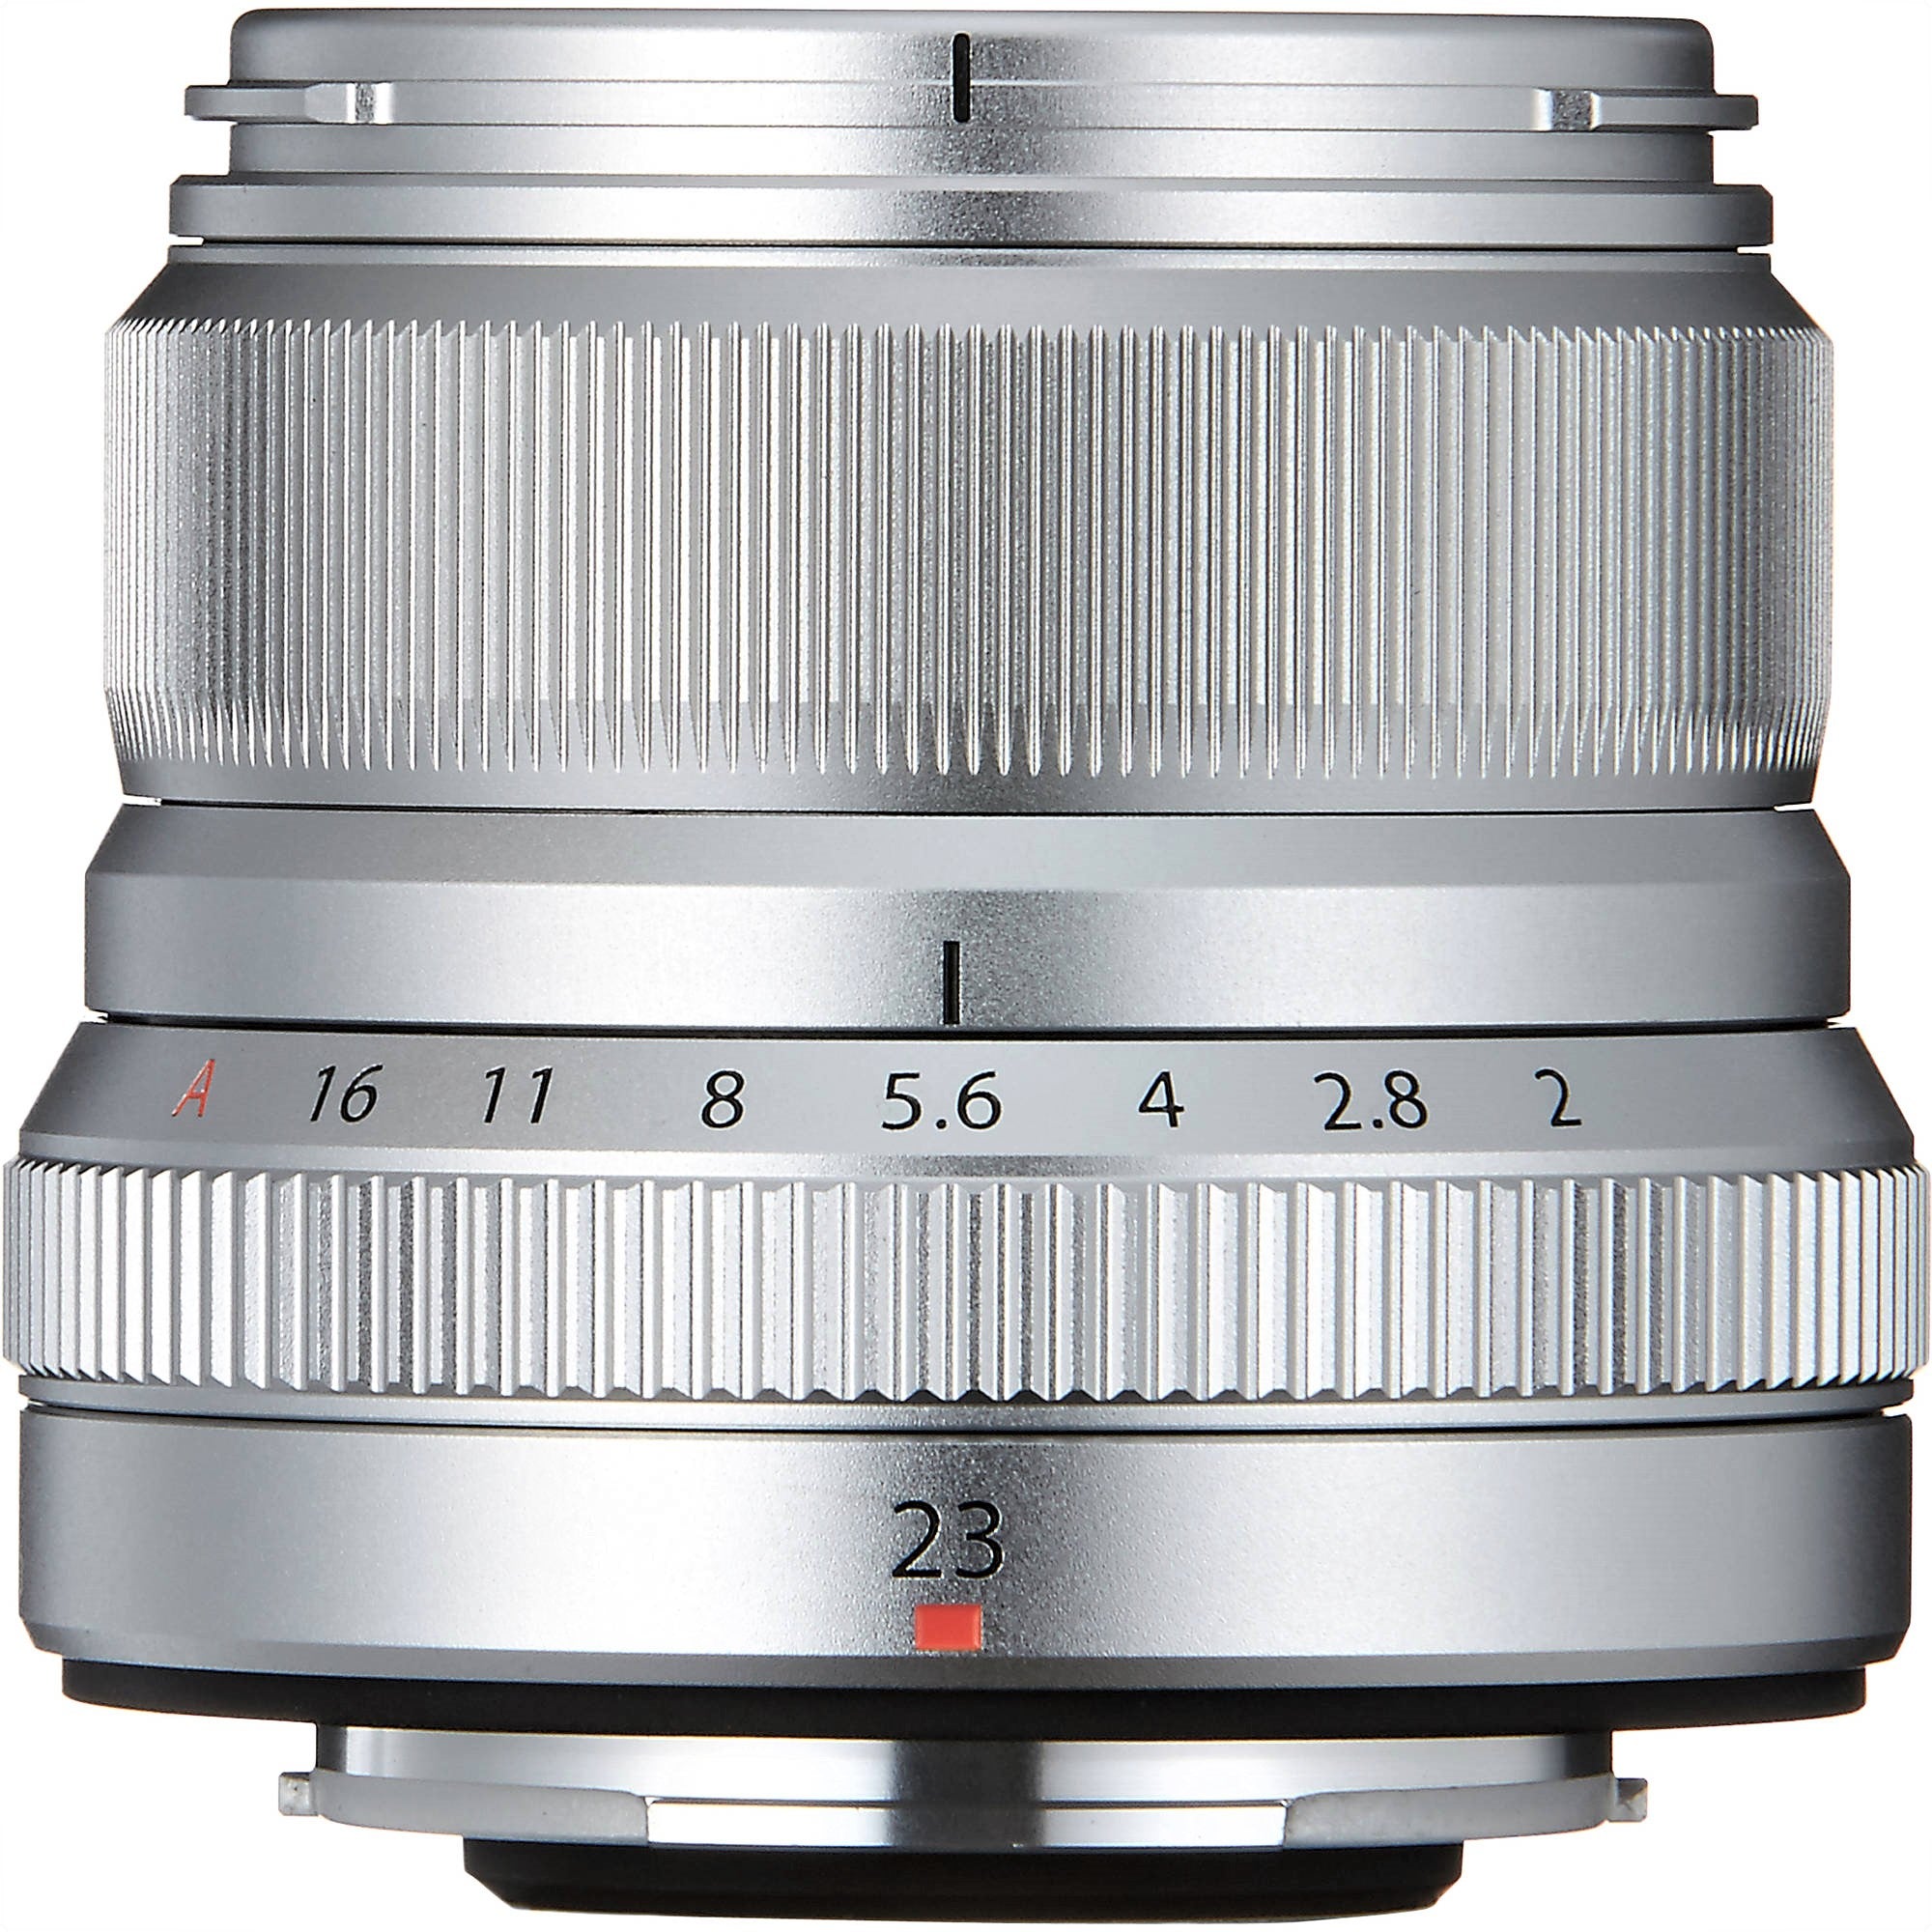 FUJIFILM XF 23mm f/2 R WR Lens (Silver)